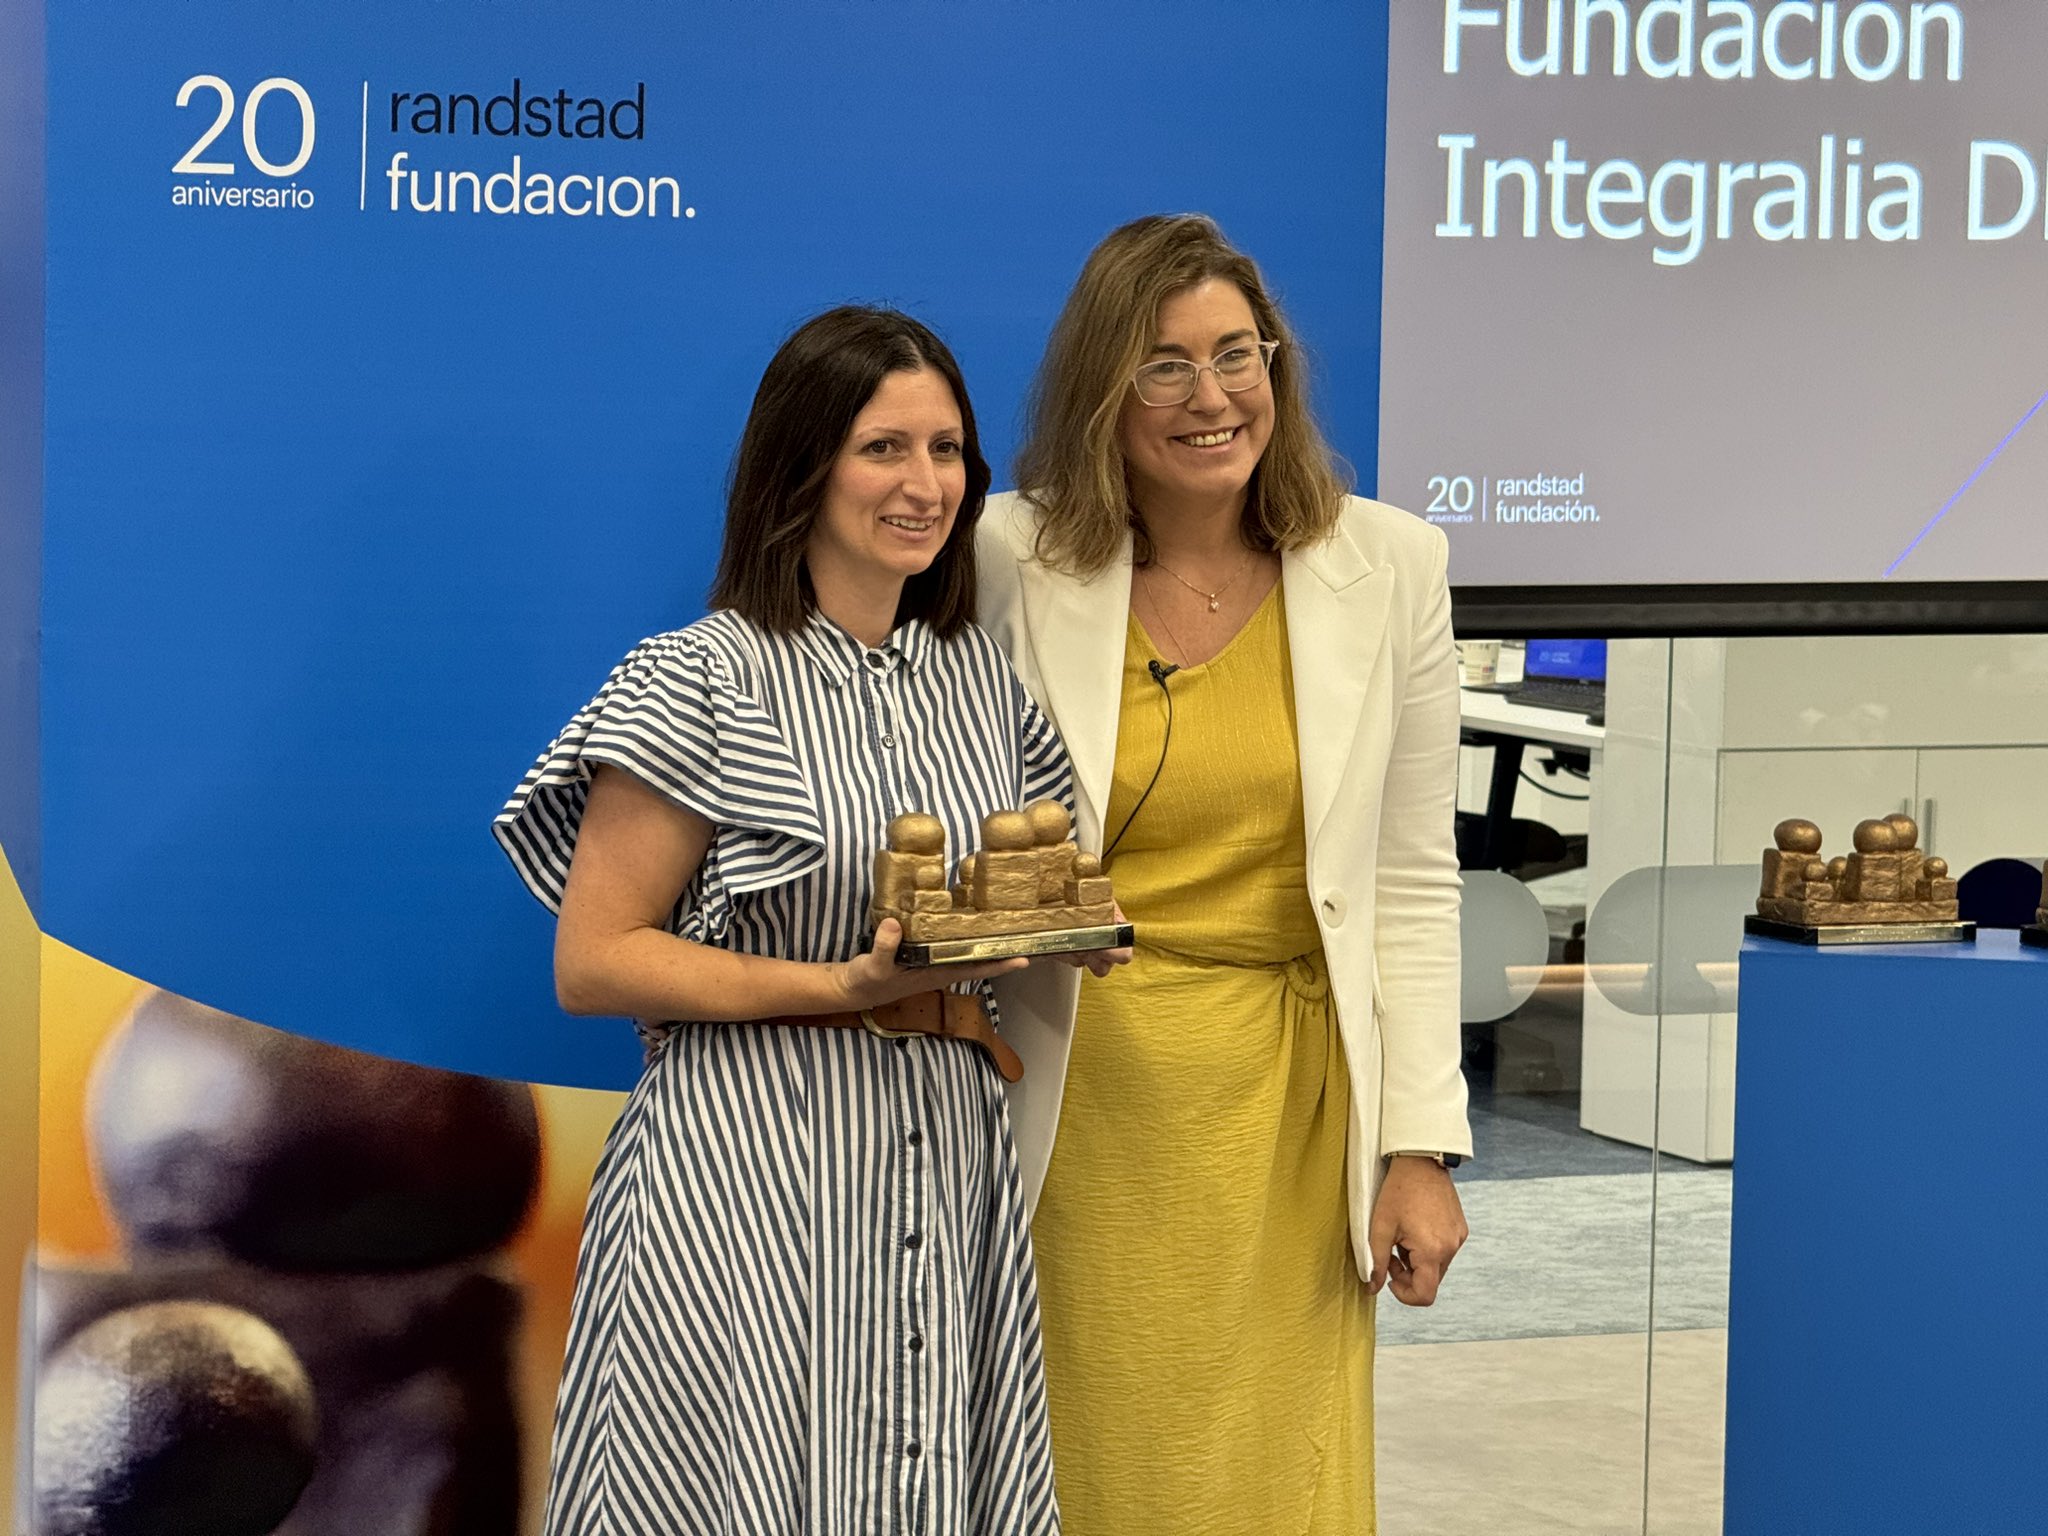 Noemía Arrieta, de Fundación Integralia DKV, recibe el premio Fundación Randstad de manos de María Viver